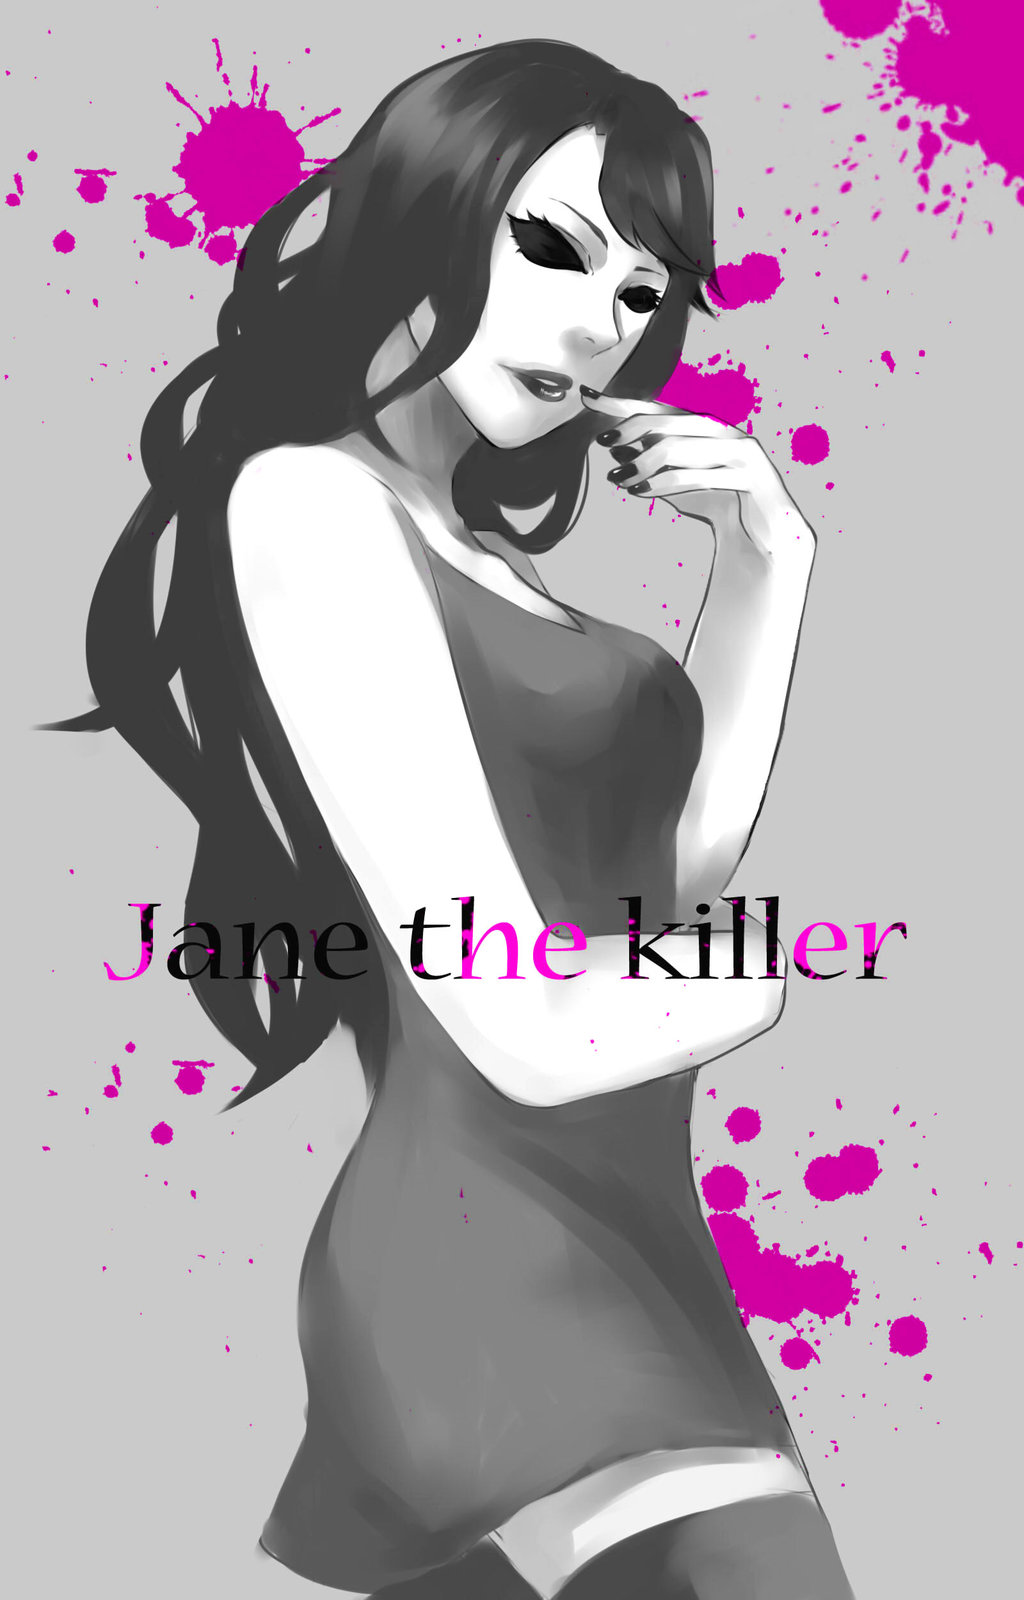 jane the killer drawings